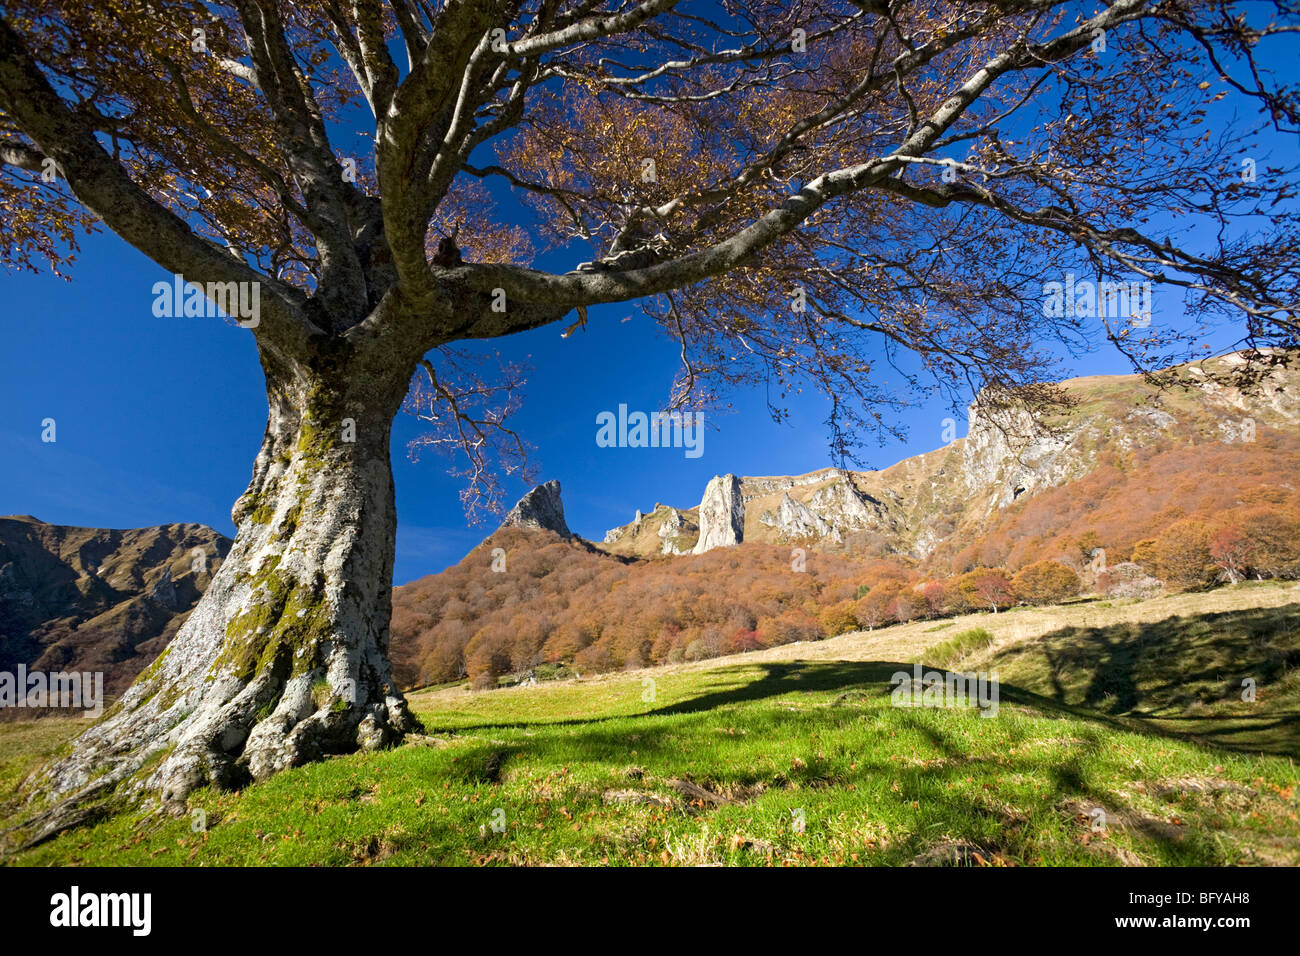 In Autumn, a beech tree (Fagus sylvatica) in the Chaudefour valley (Auvergne - France). Hêtre dans la vallée de Chaudefour. Stock Photo